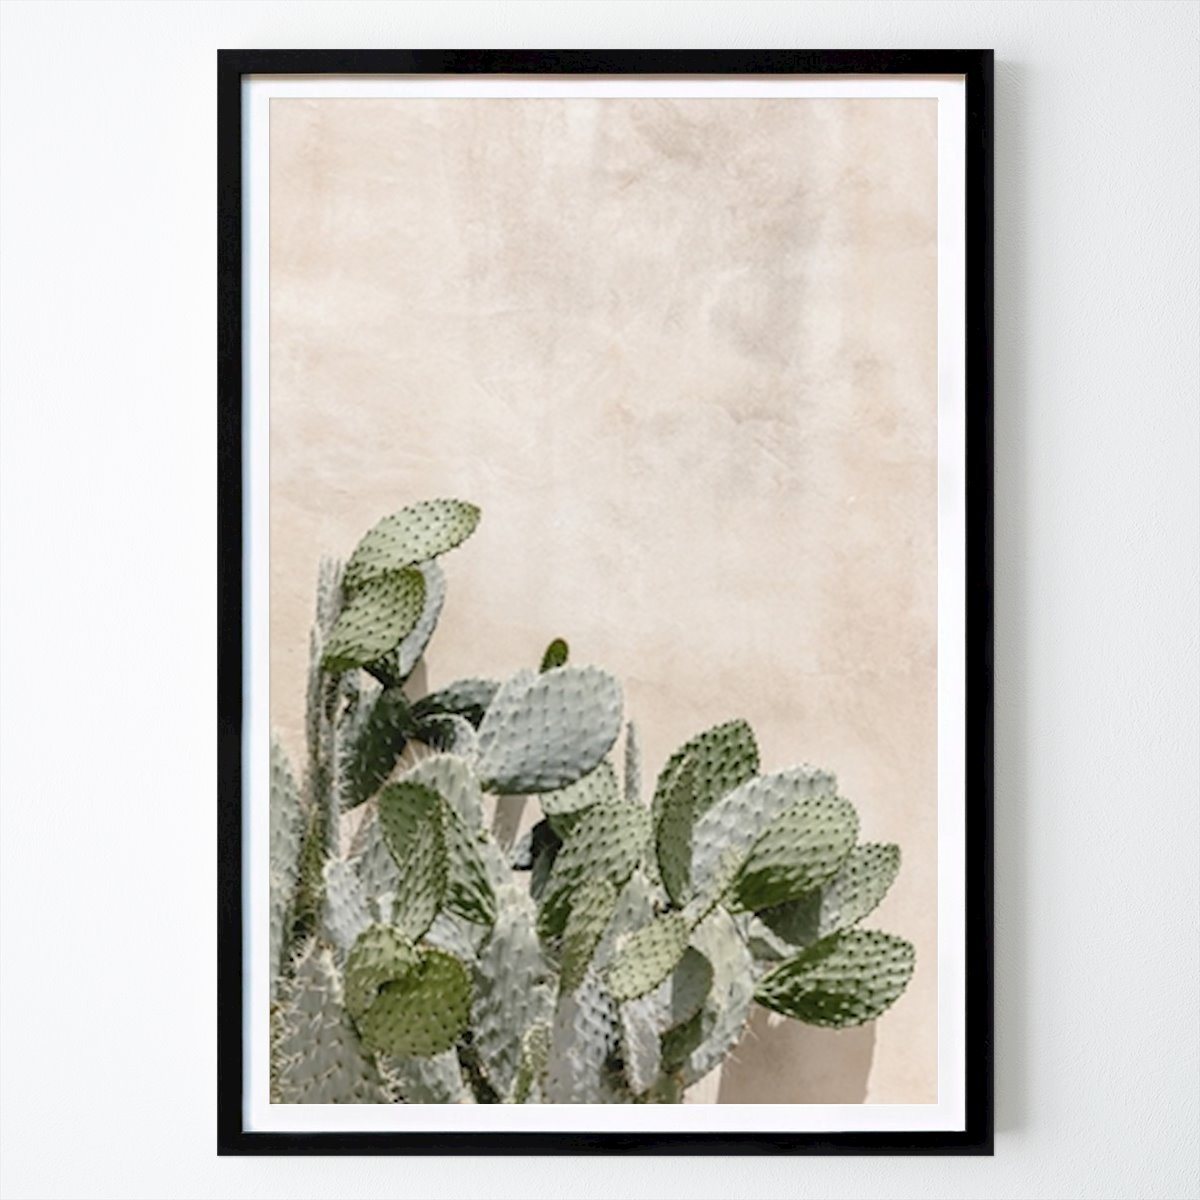 Poster: Kaktus in der Nähe einer Mauer von Diana and Ronnie von Printler